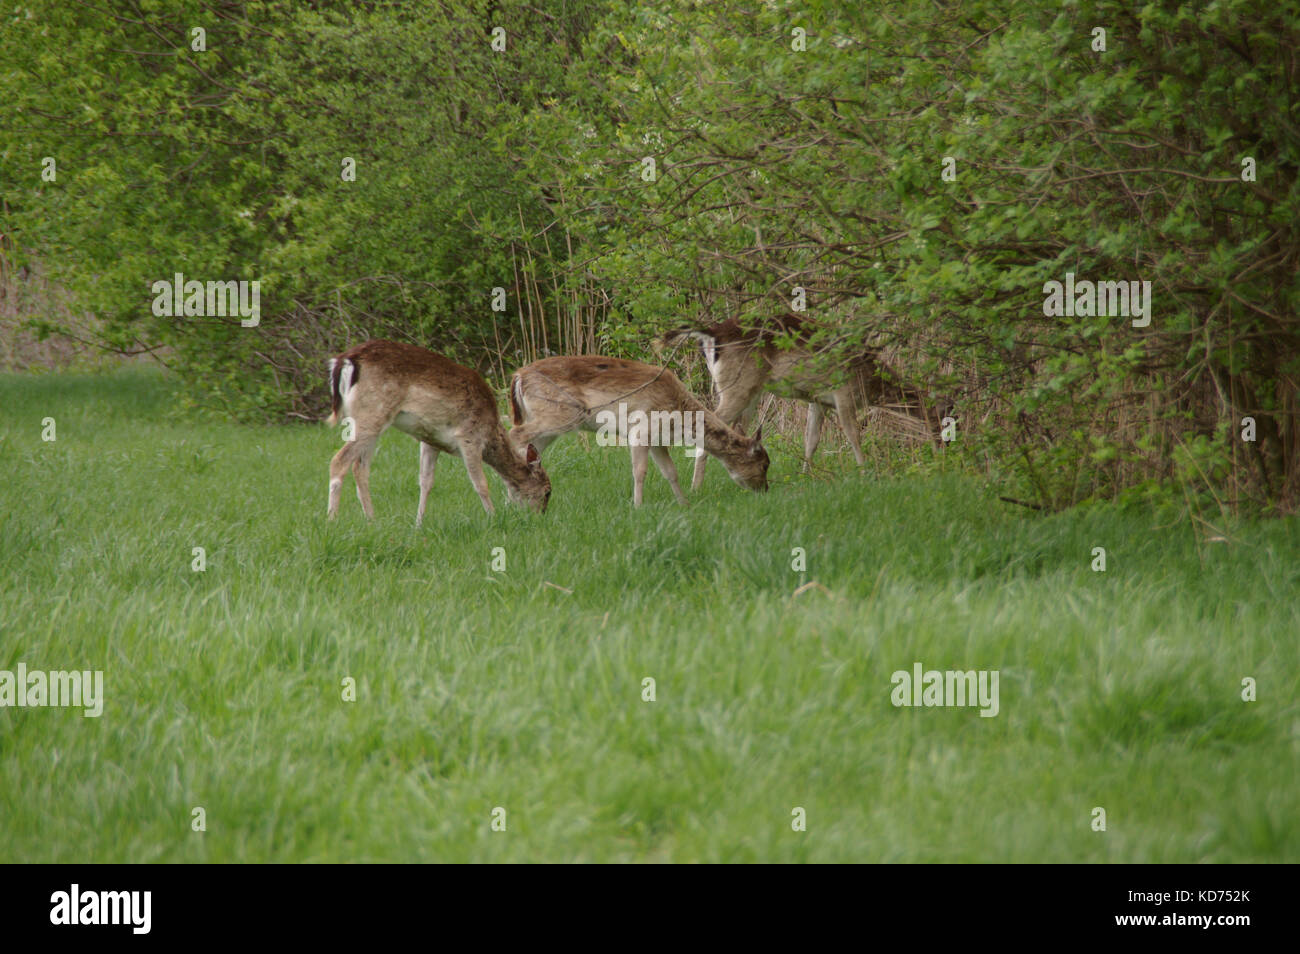 Varios corzos en una pradera en el entorno natural. La vida silvestre en Europa. Foto de stock